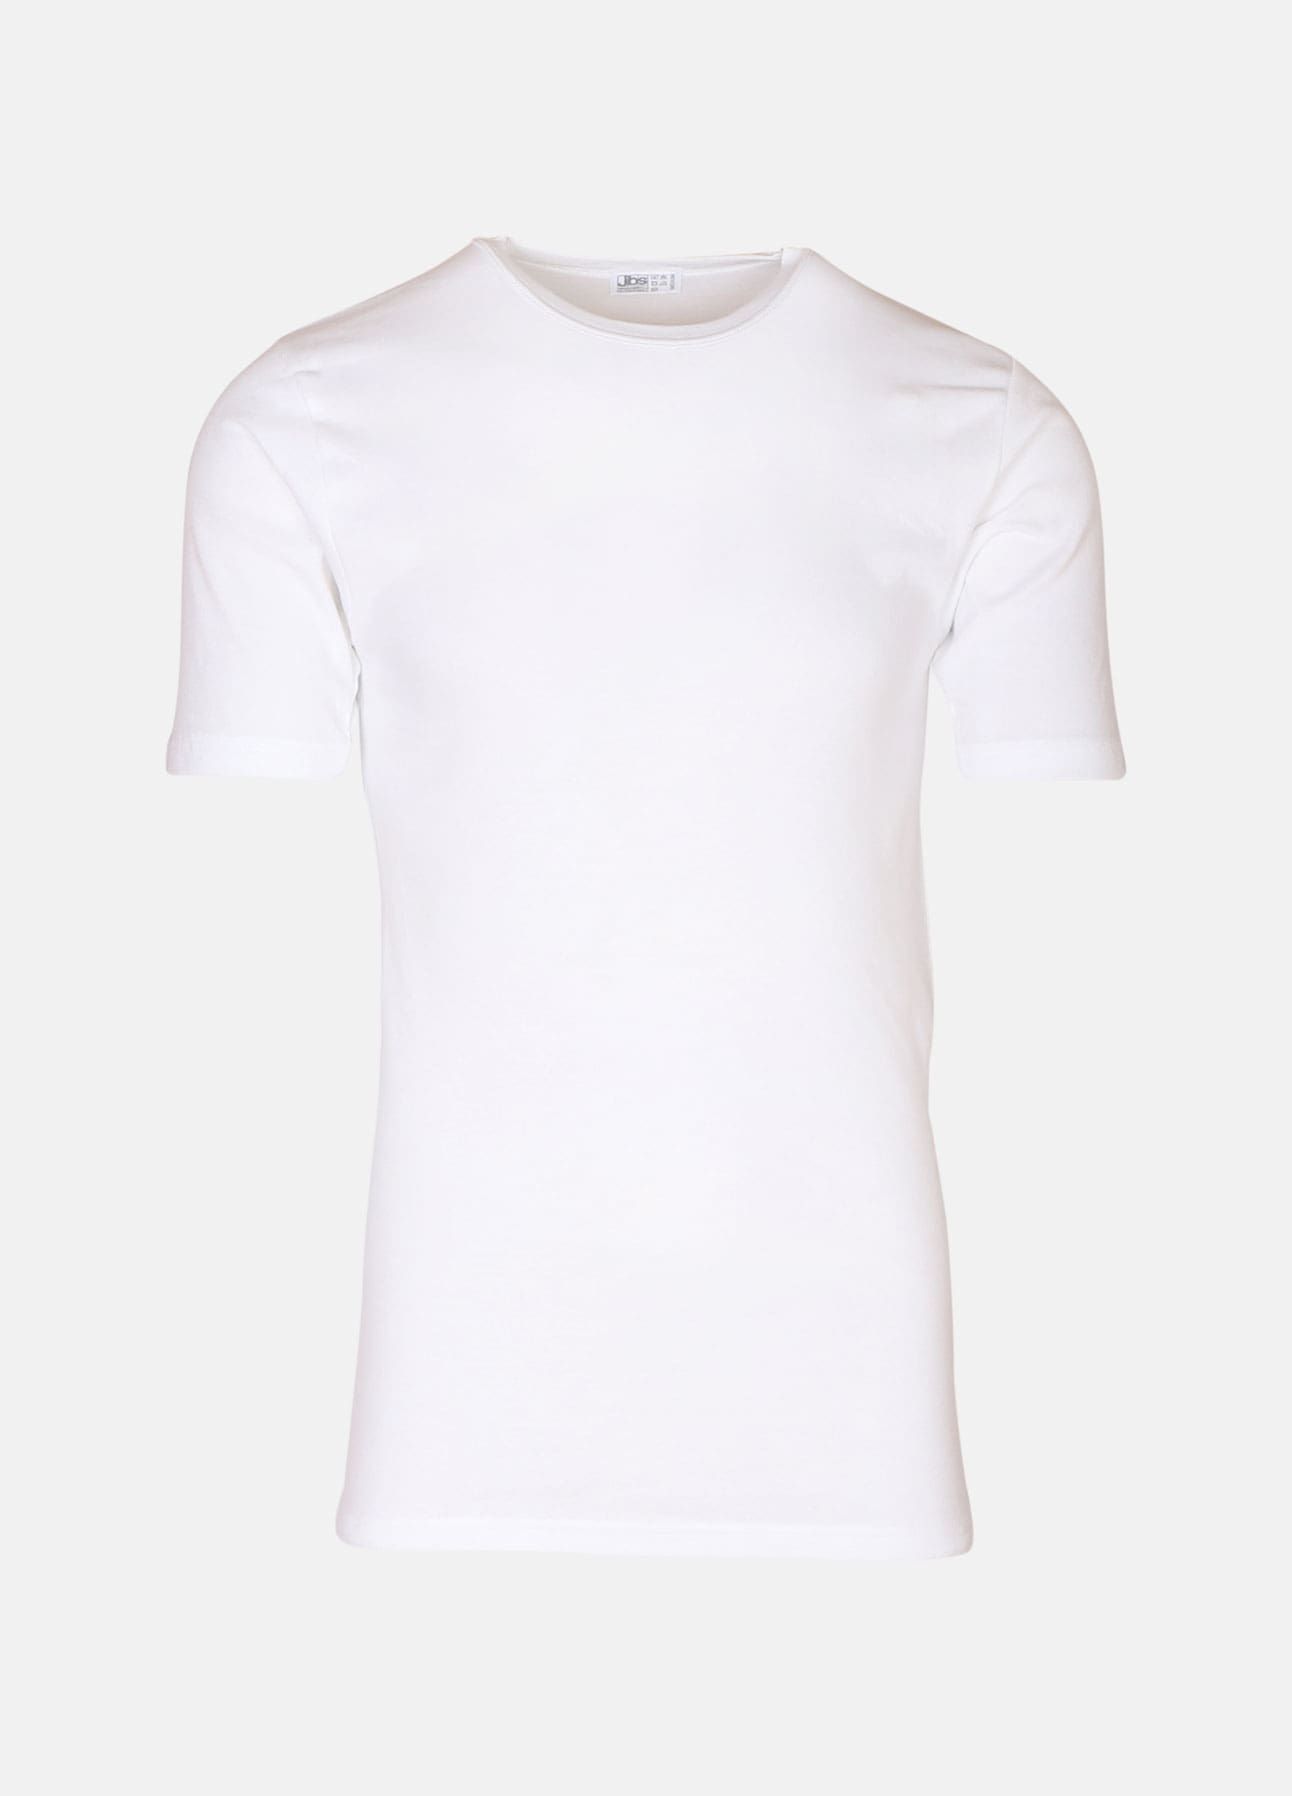 Hvid 09 t-shirt med rund hals fra JBS